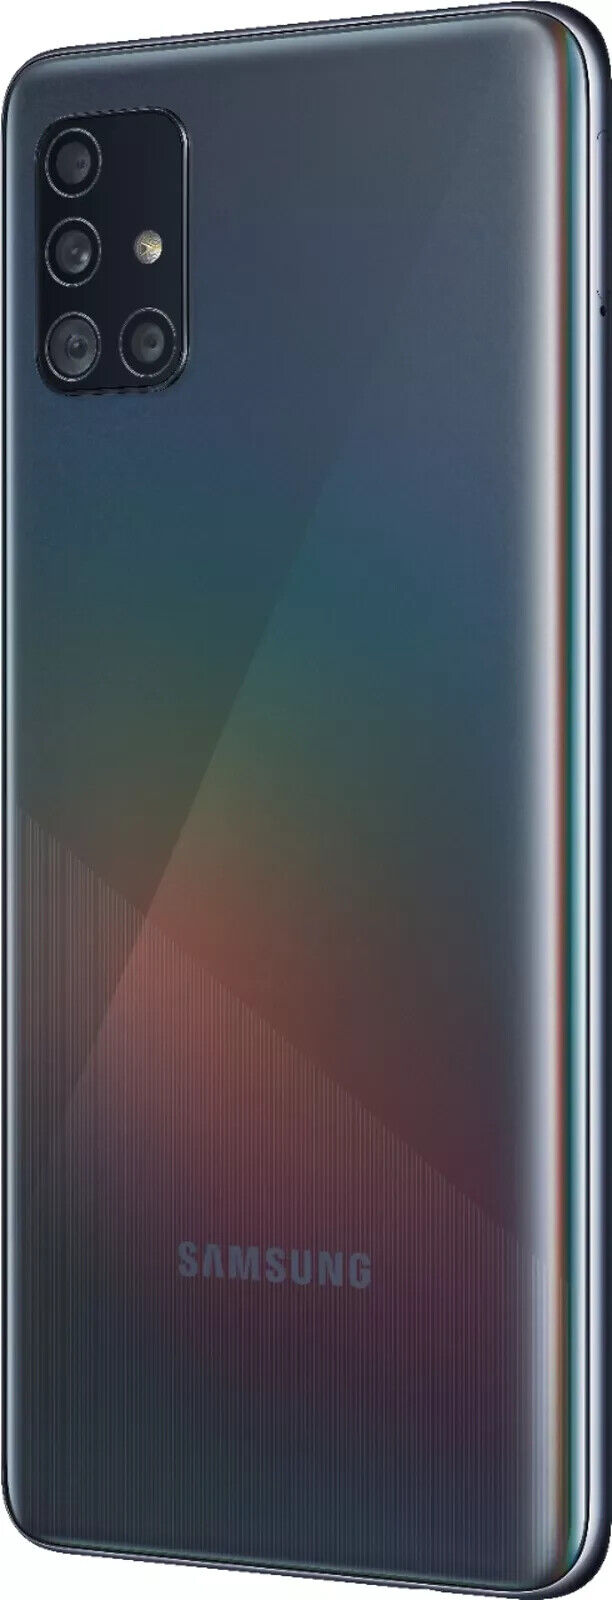 Samsung Galaxy A51 128GB A515U1 Fully Unlocked - Black -   Good Condition